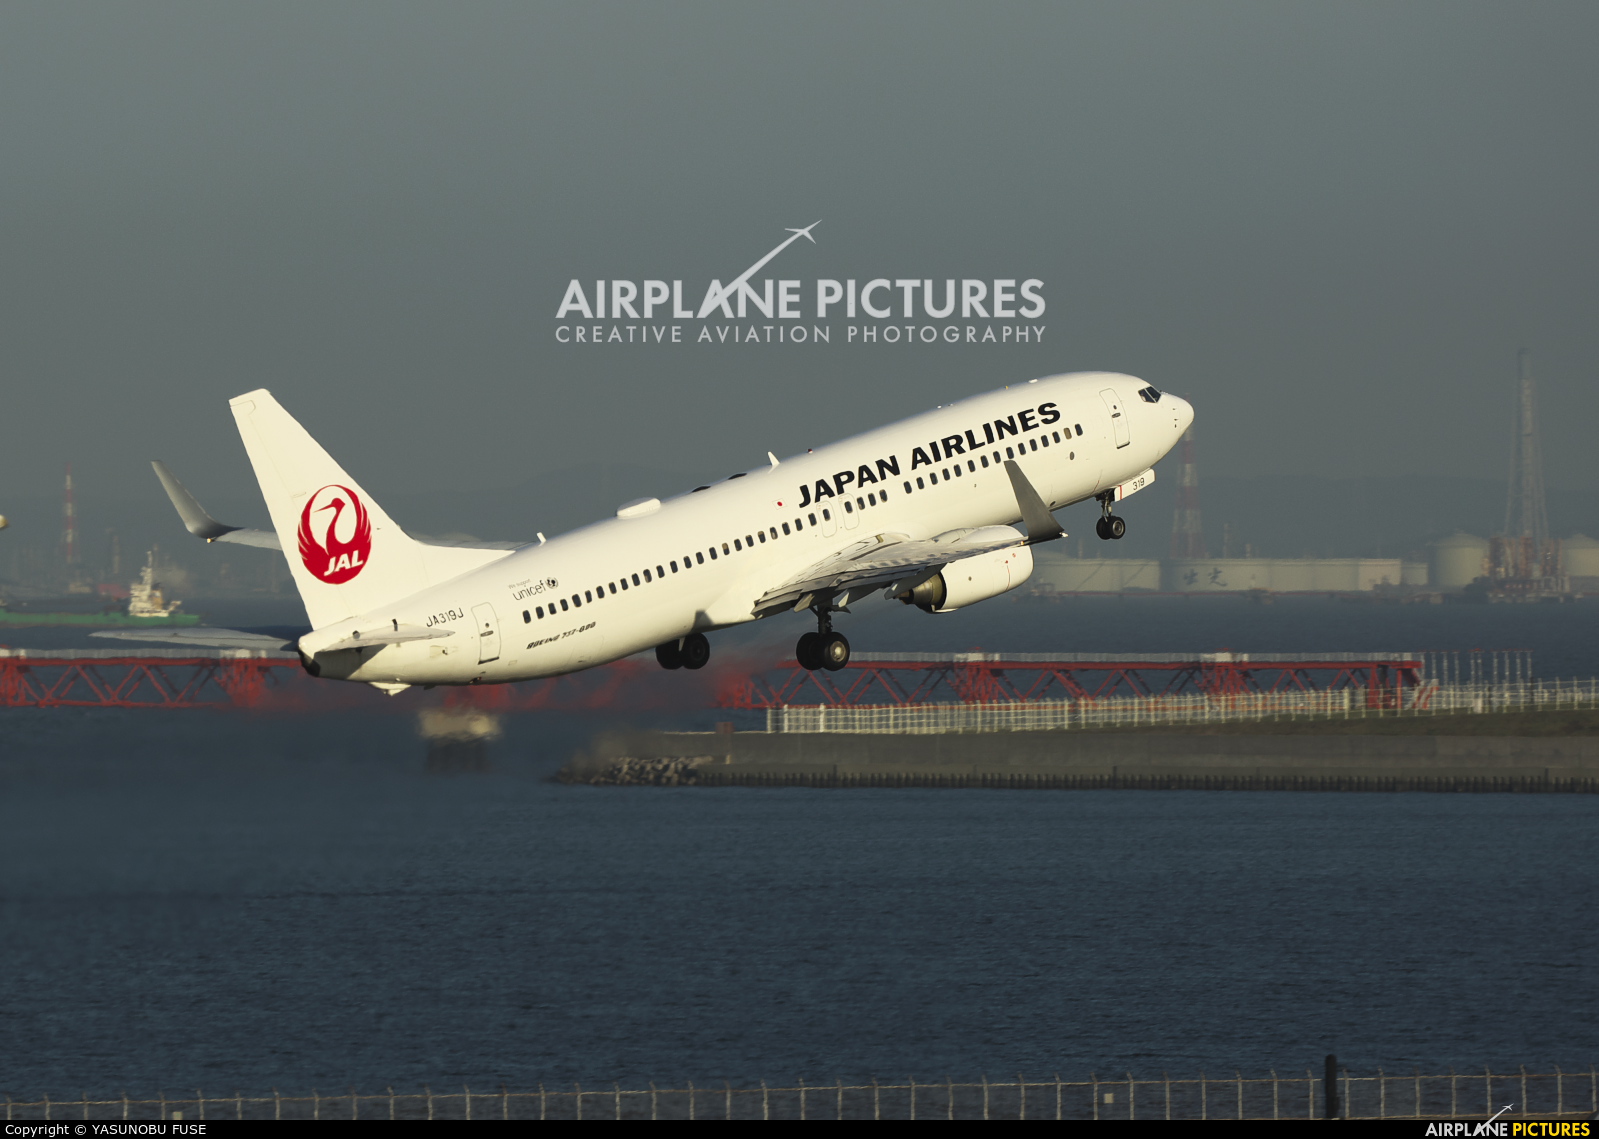 JAL - Japan Airlines JA319J aircraft at Tokyo - Haneda Intl